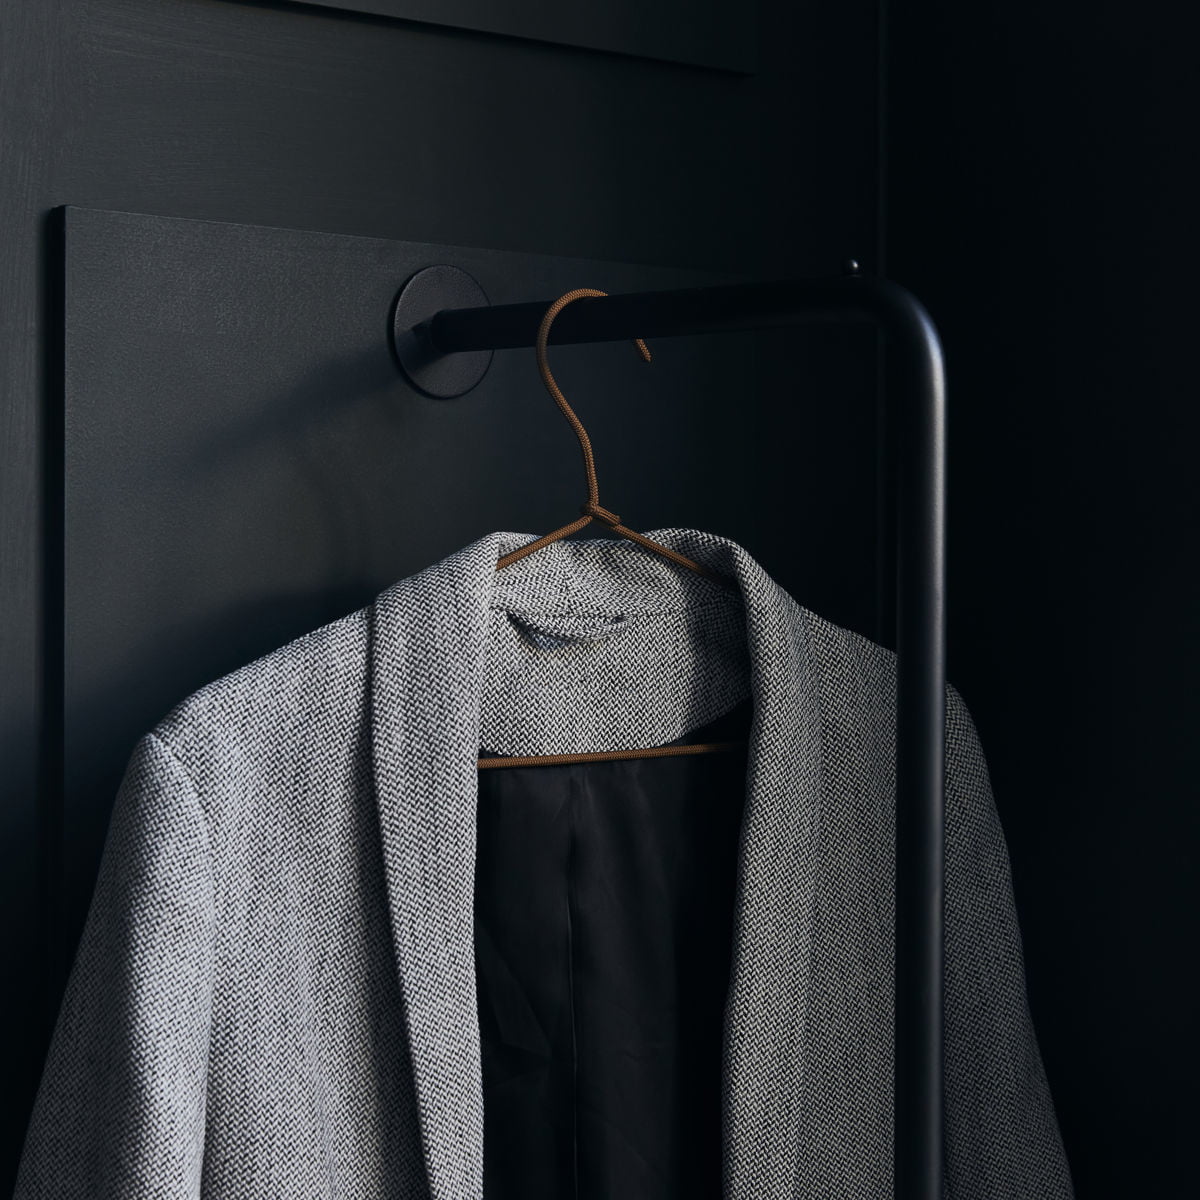 ferm LIVING Coat hanger, set of 3, black